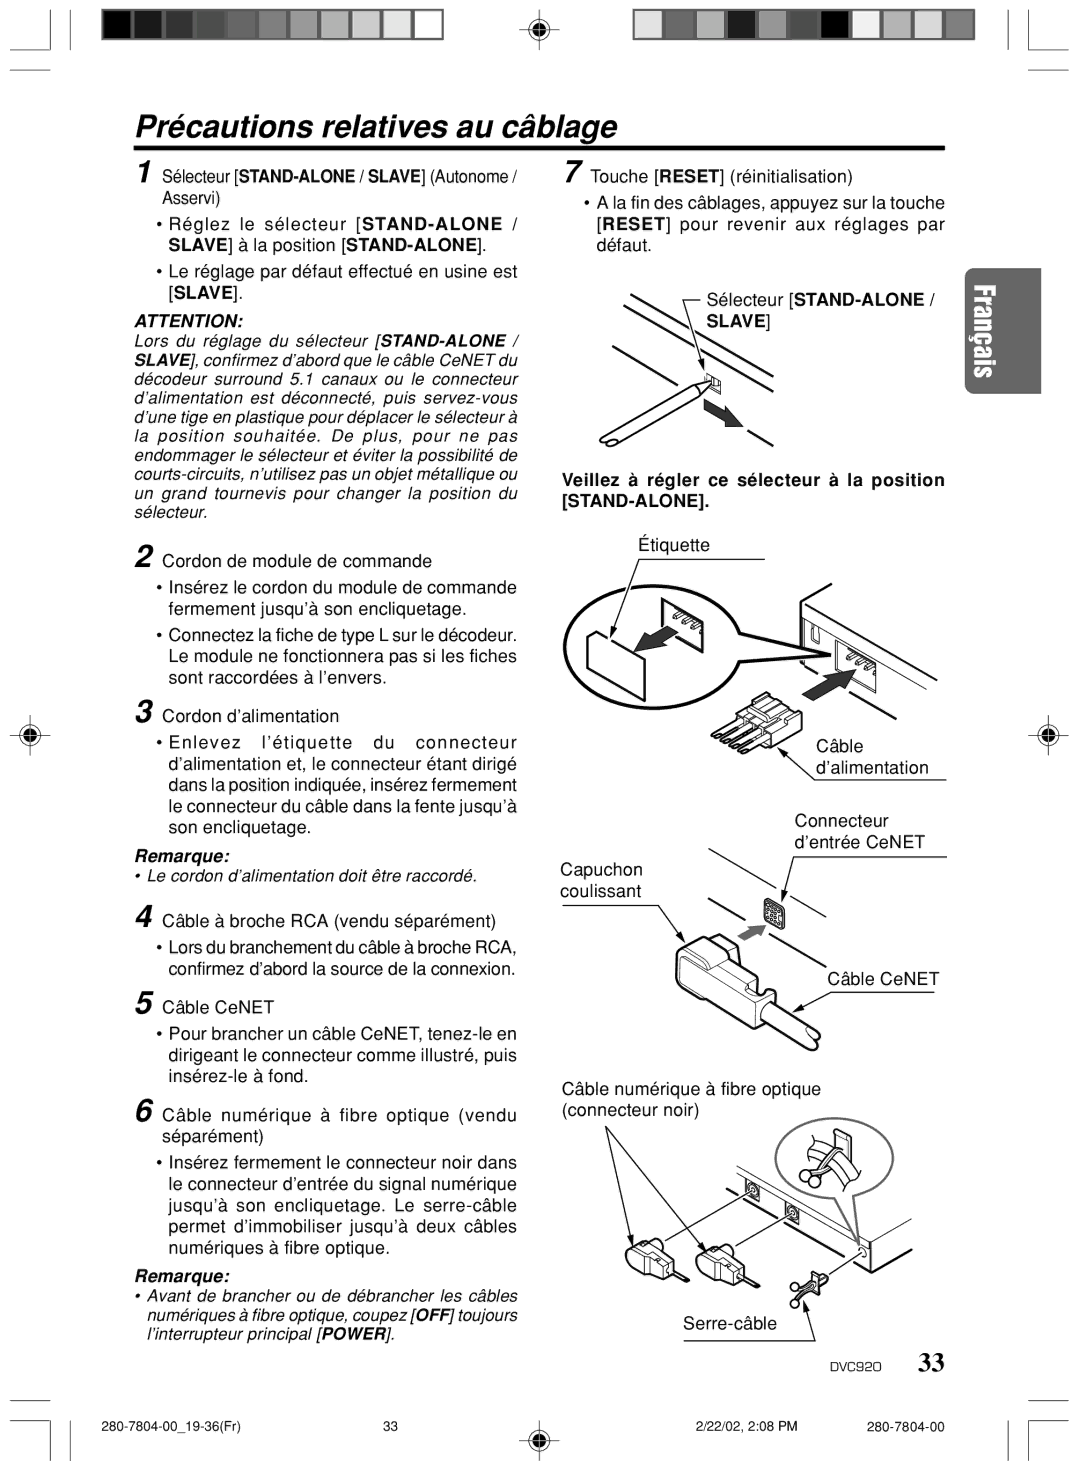 Clarion DVC920 manual Précautions relatives au câblage, Sélecteur STAND-ALONE / Slave Autonome / Asservi 